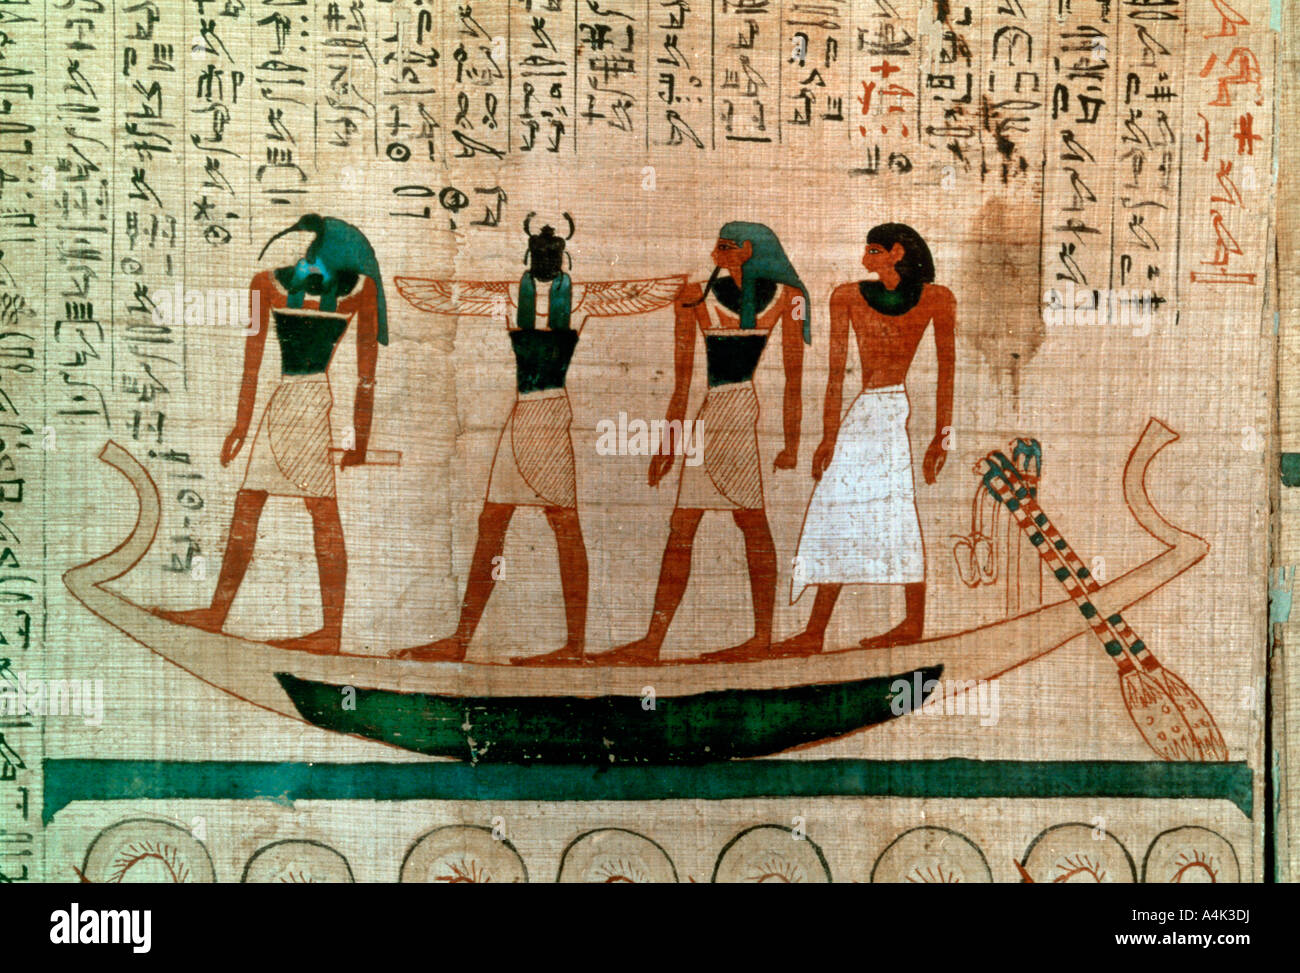 Antico papiro egizio immagini e fotografie stock ad alta risoluzione - Alamy